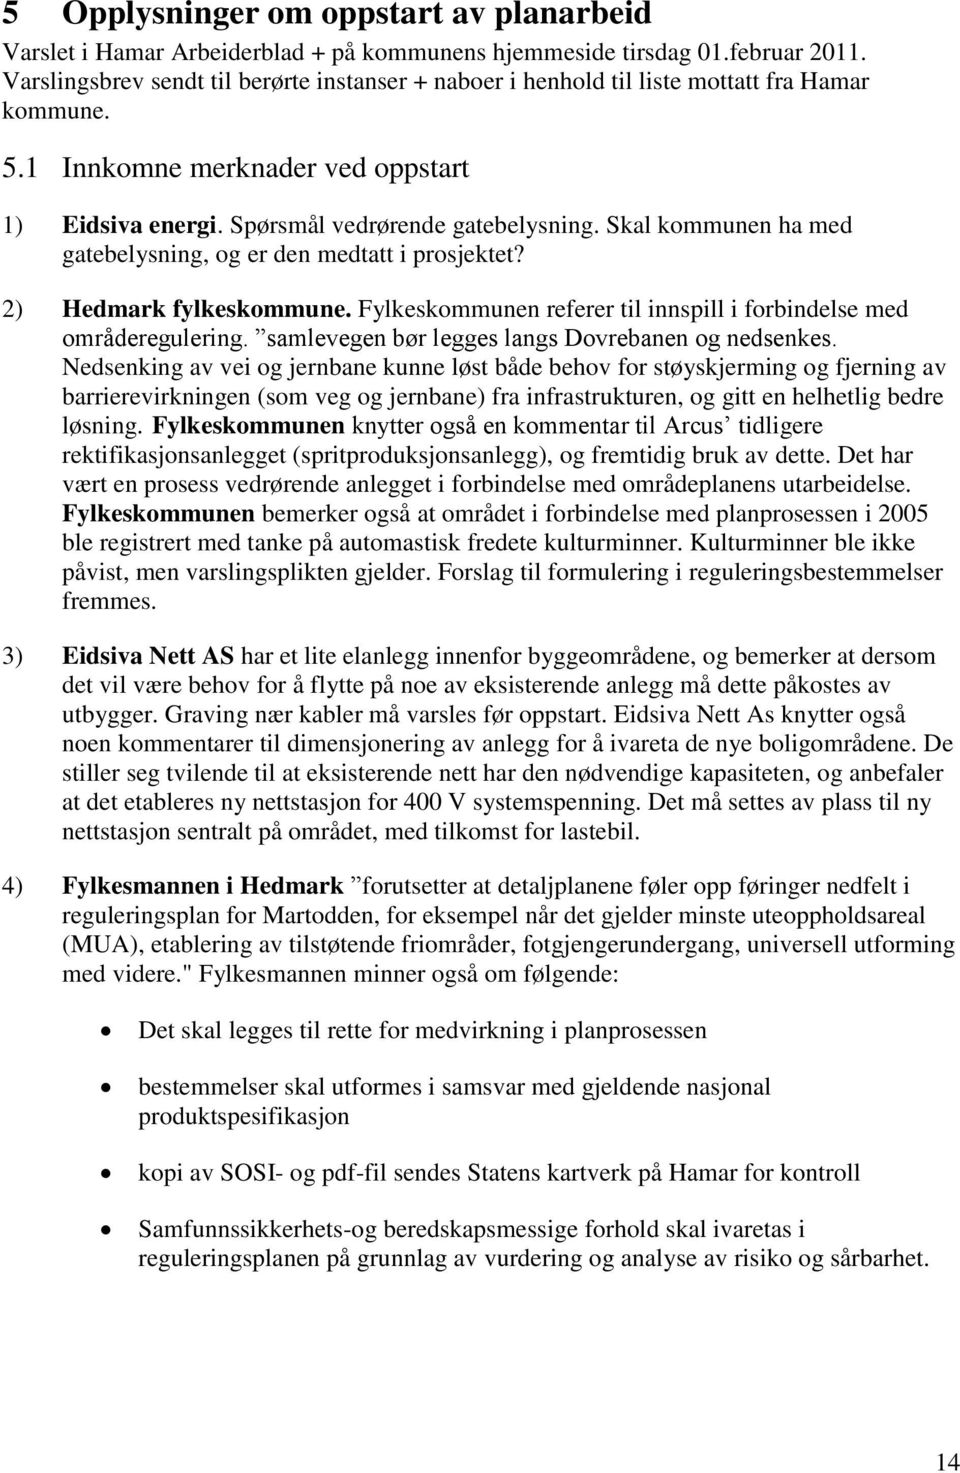 Skal kommunen ha med gatebelysning, og er den medtatt i prosjektet? 2) Hedmark fylkeskommune. Fylkeskommunen referer til innspill i forbindelse med områderegulering.